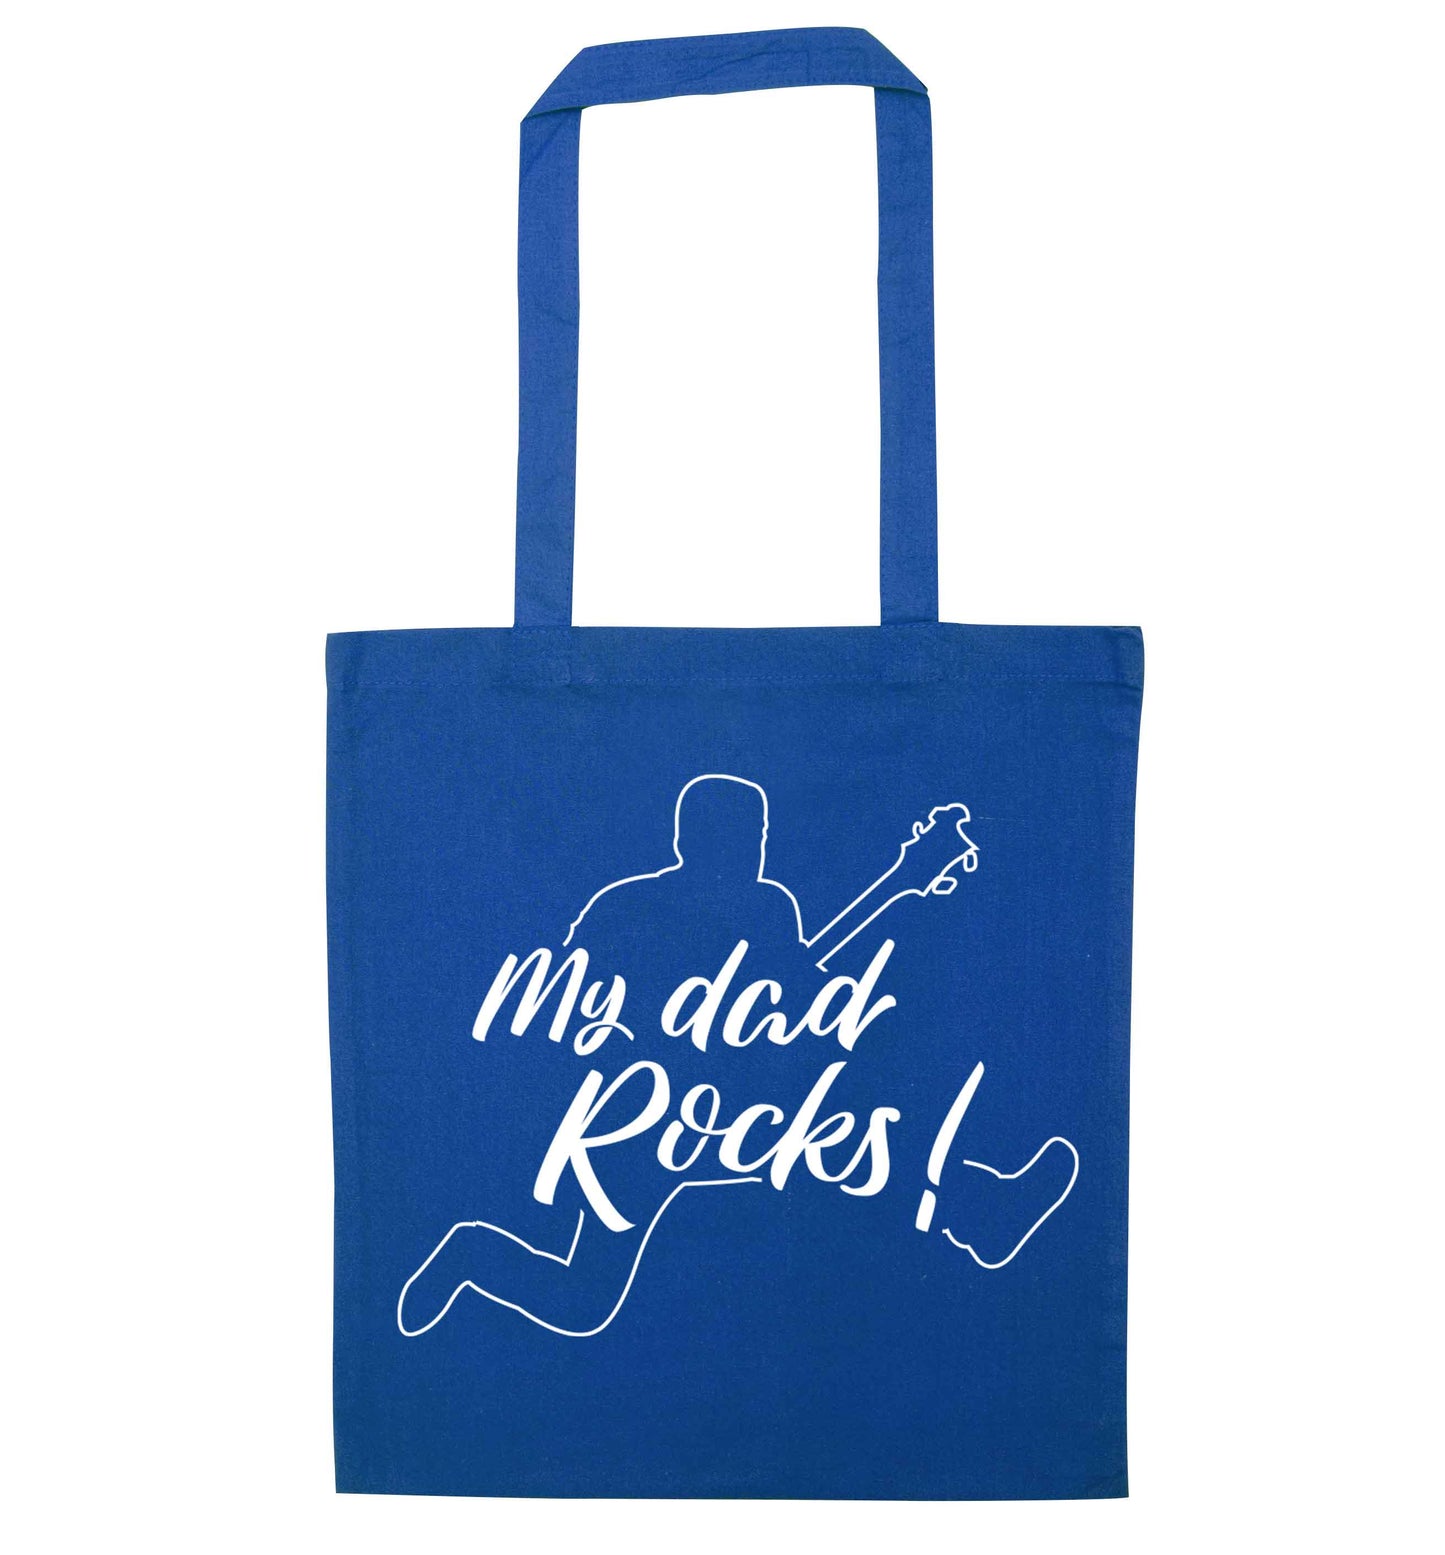 My Dad rocks blue tote bag